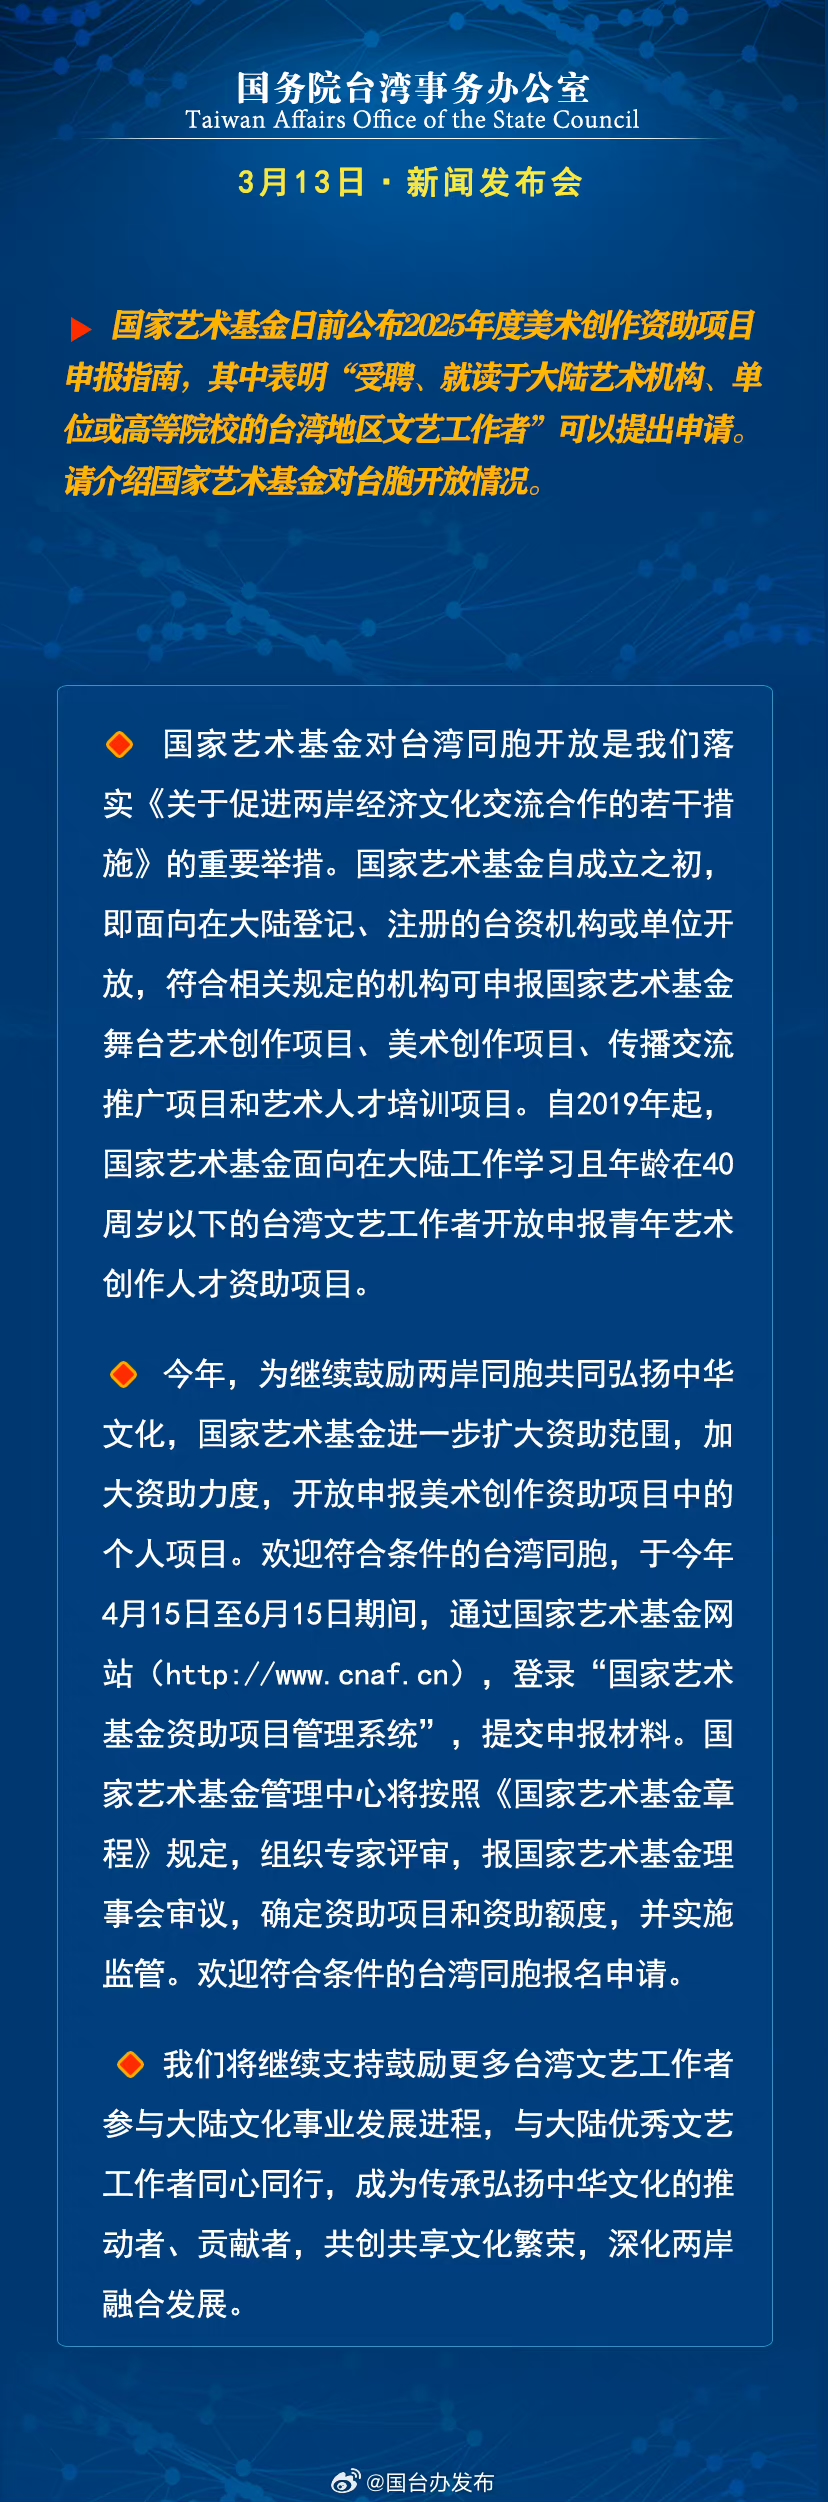 國務院台灣事務辦公室3月13日·新聞發佈會